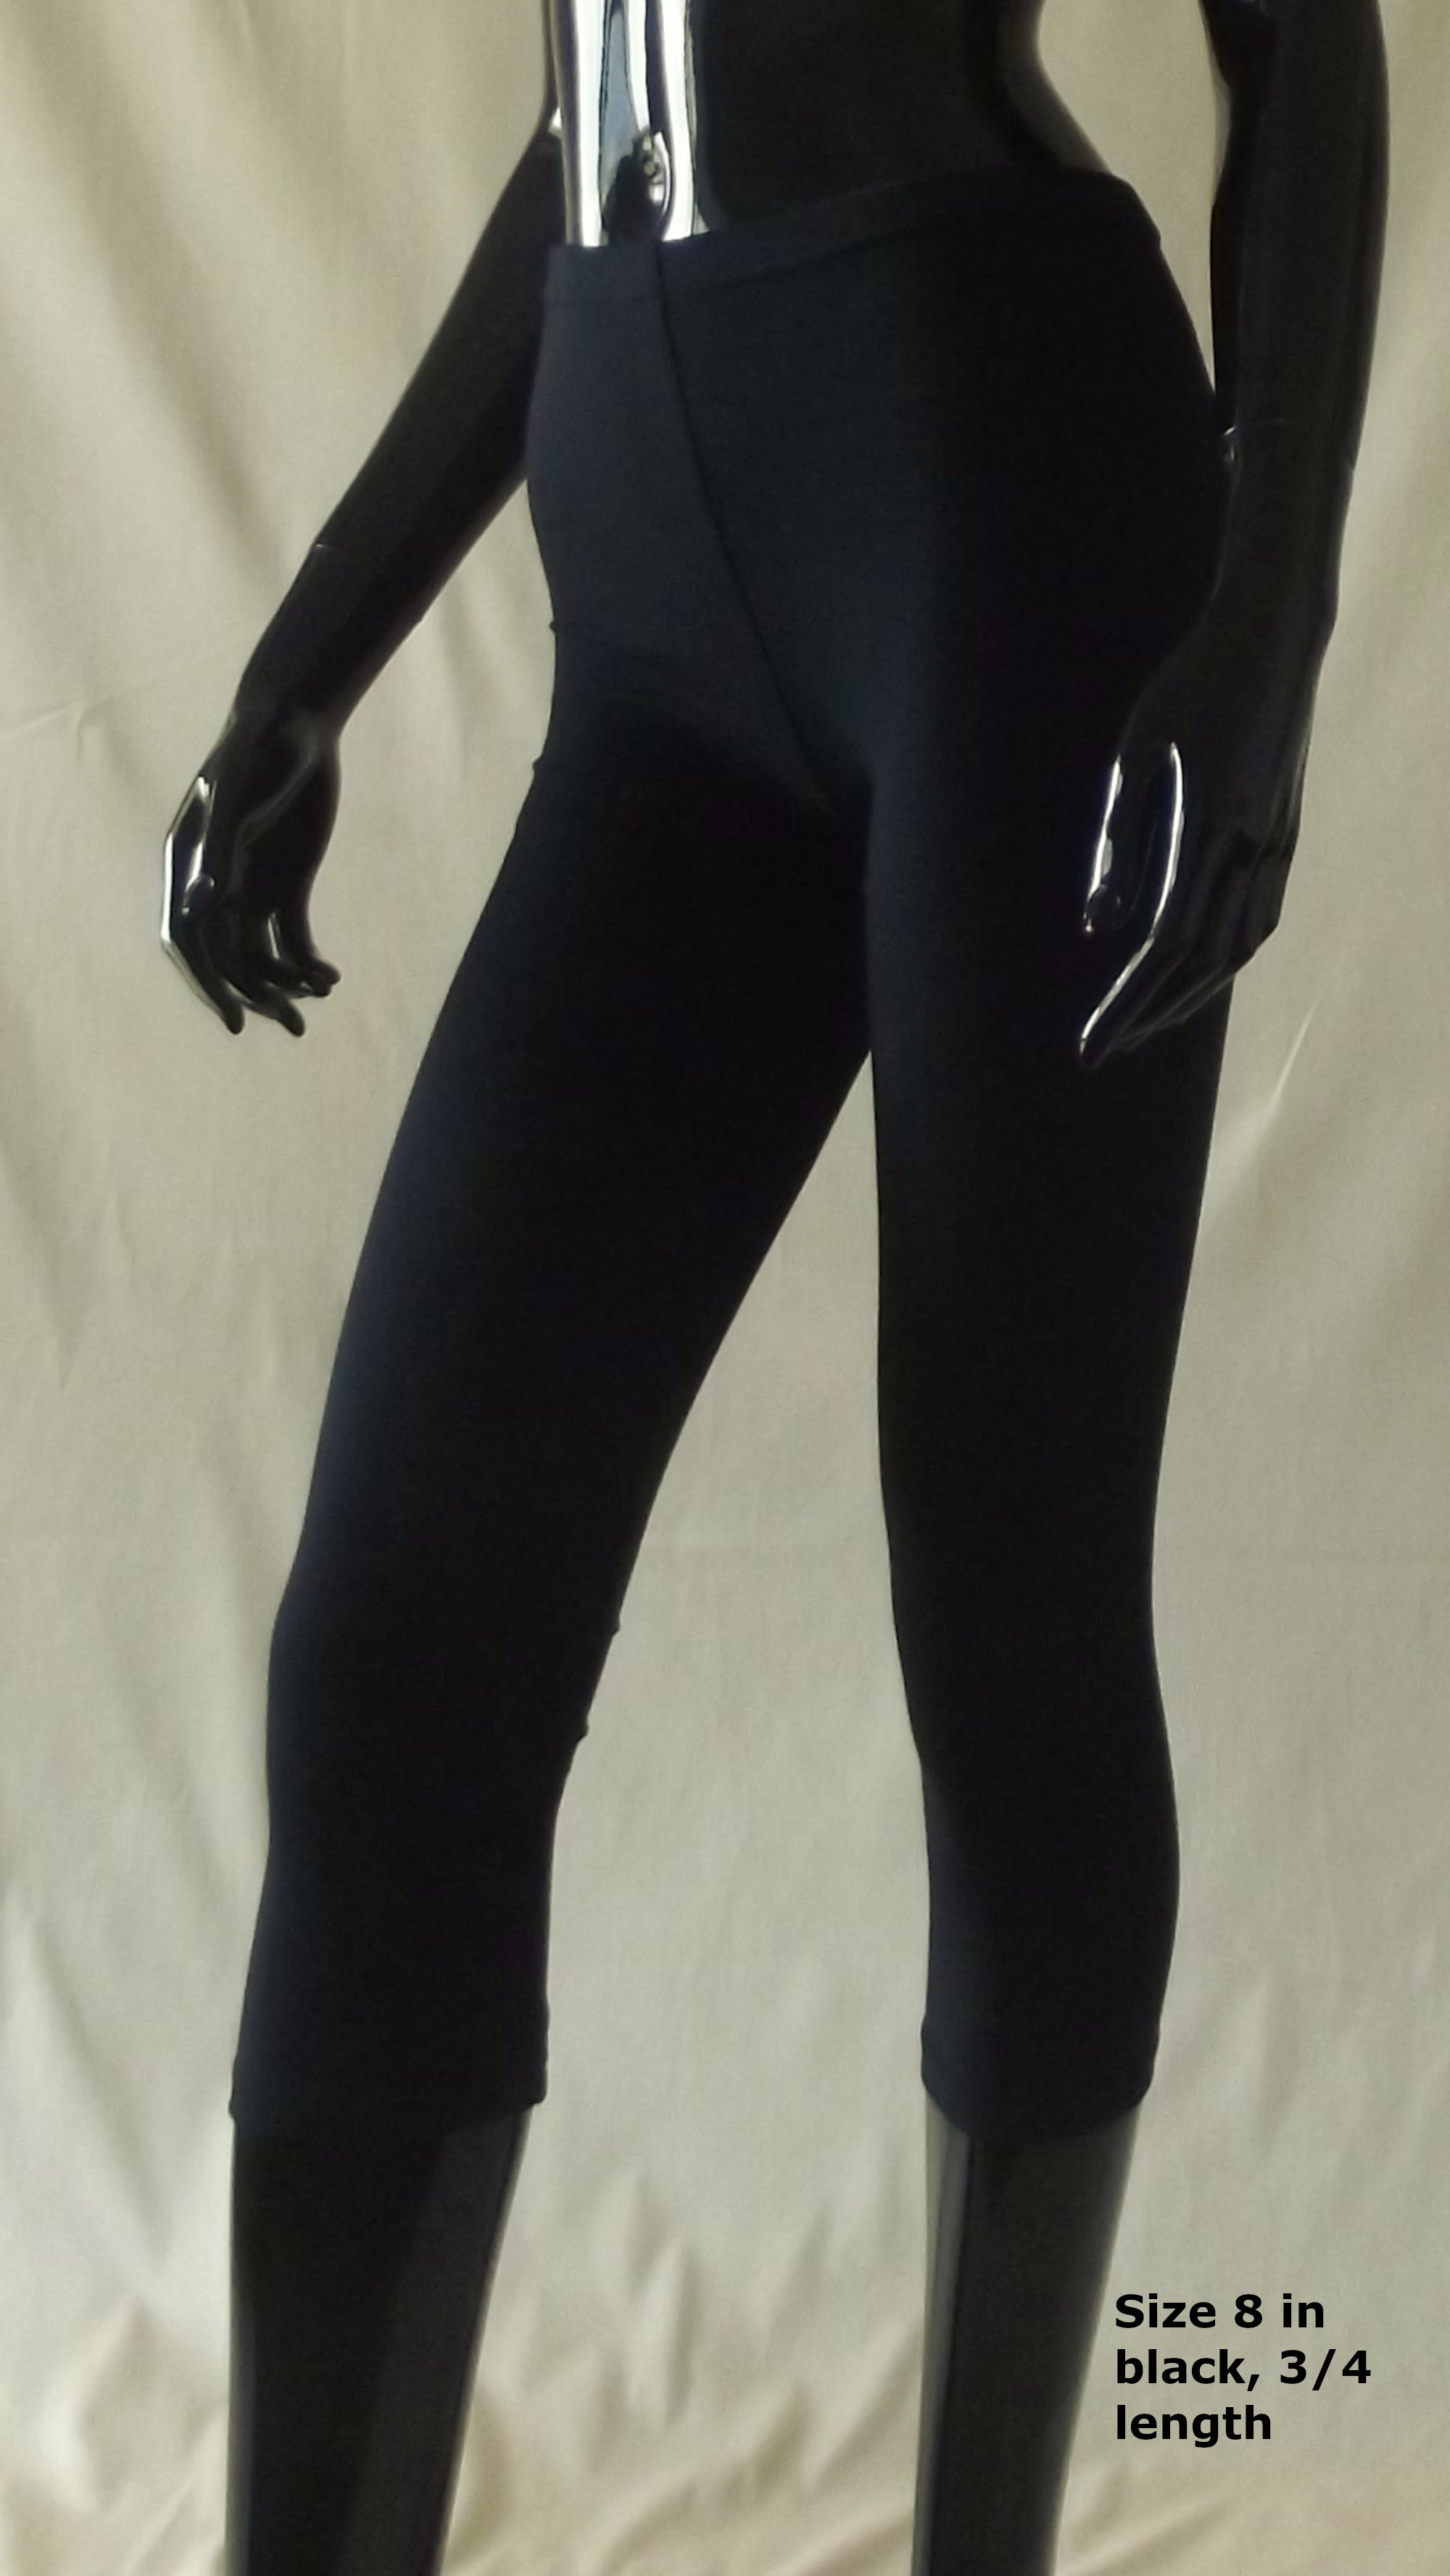 black 3/4 length women's leggings